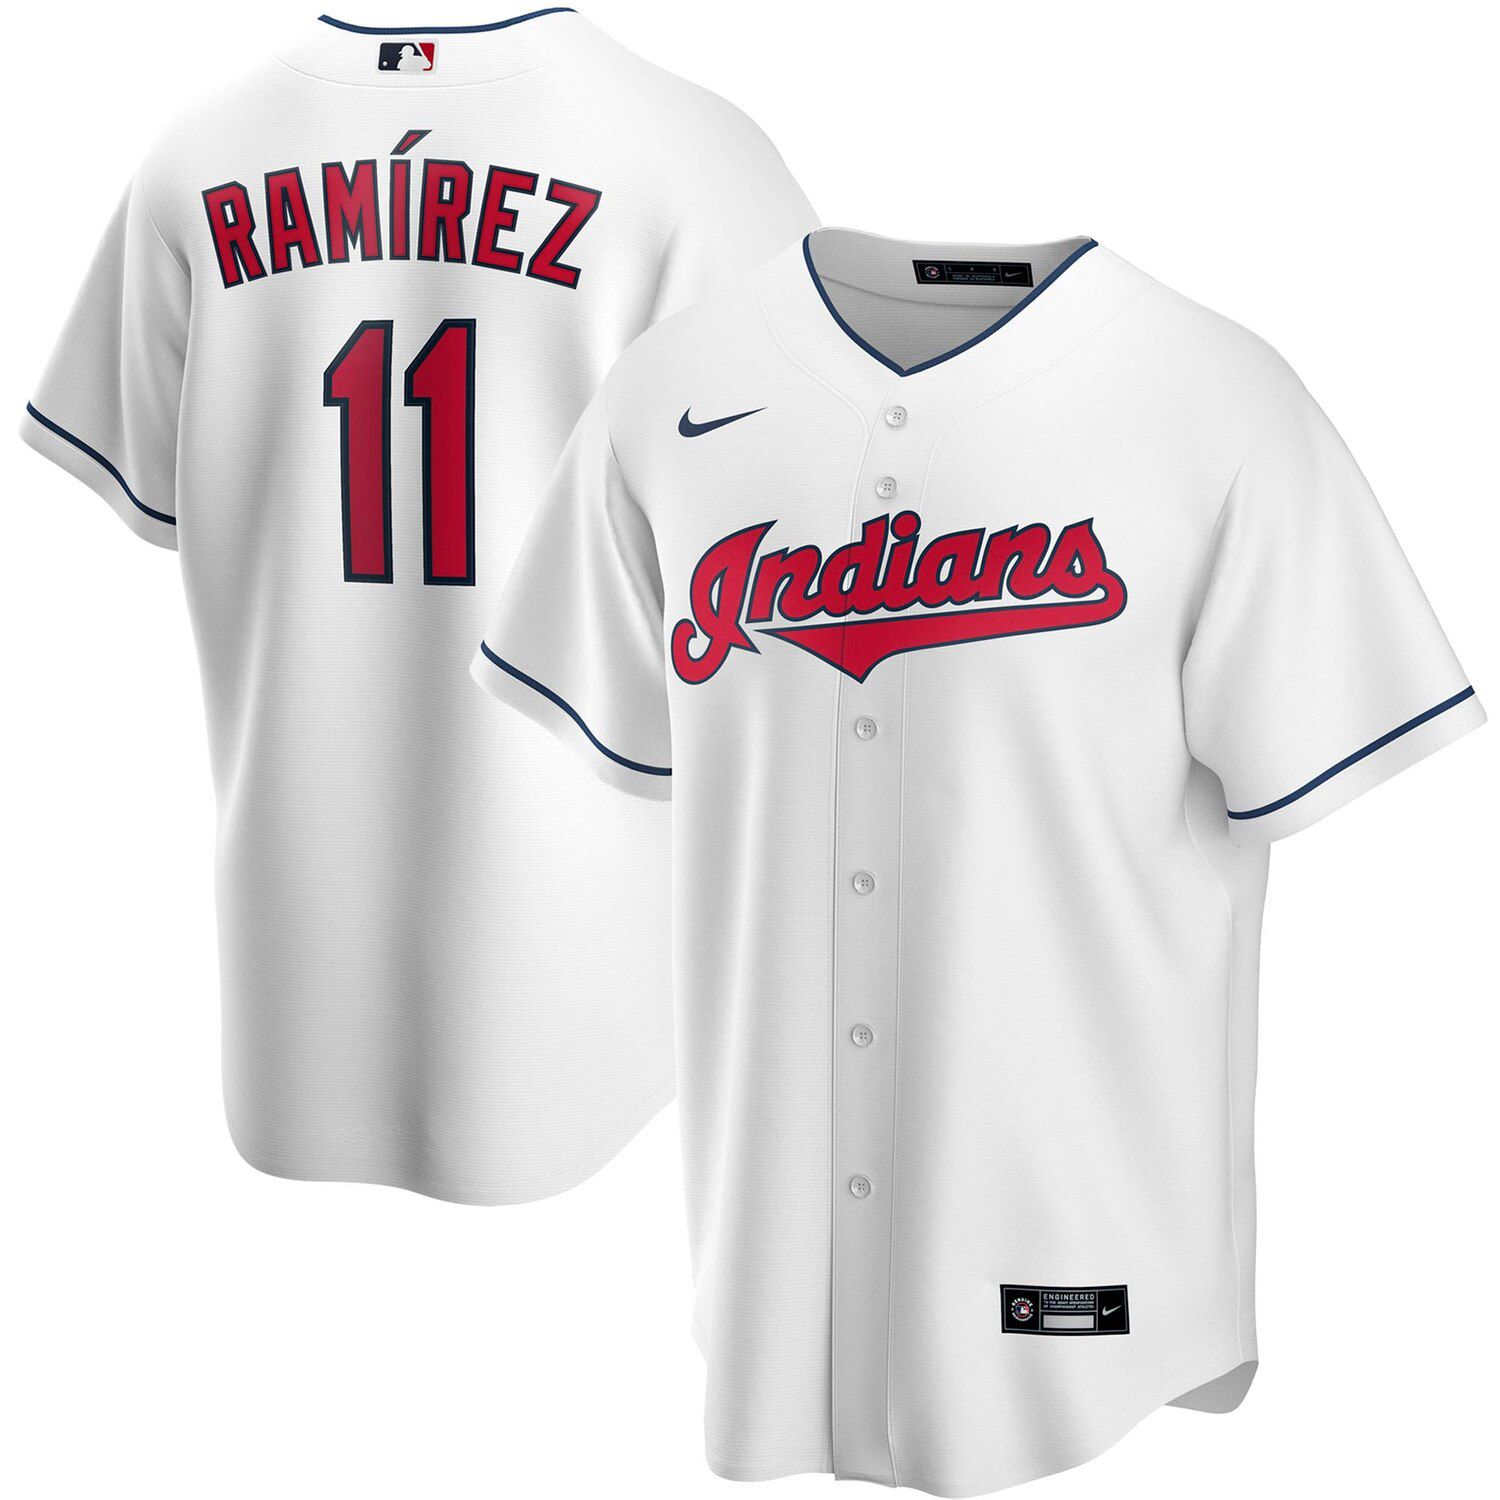 Jose Ramirez White Cleveland Indians 